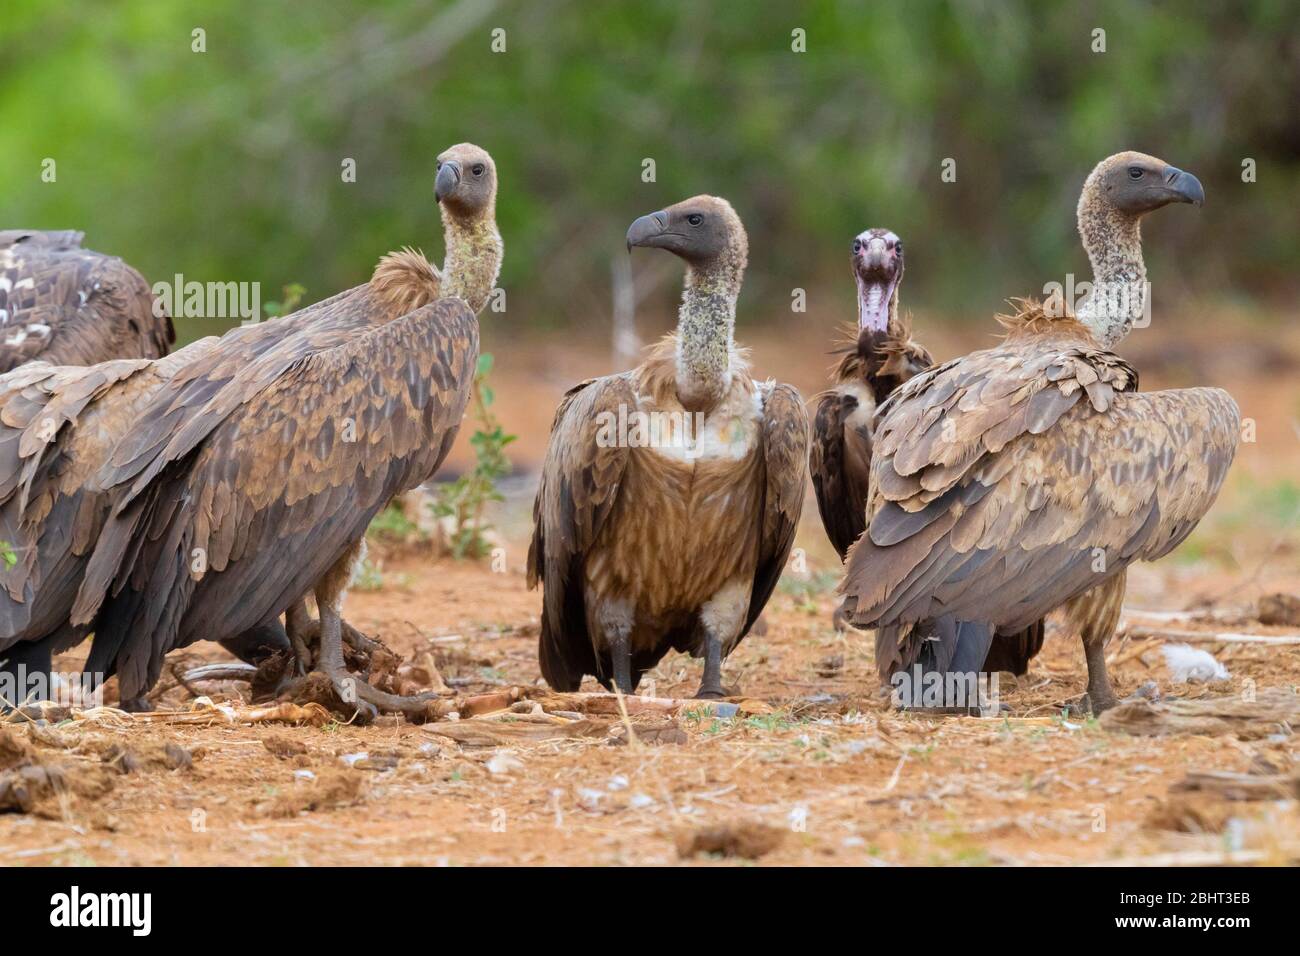 Vulture con dorso bianco (Ghips africanus), immature in piedi a terra insieme a una Vultura con cappuccio, Mpumalanga, Sudafrica Foto Stock